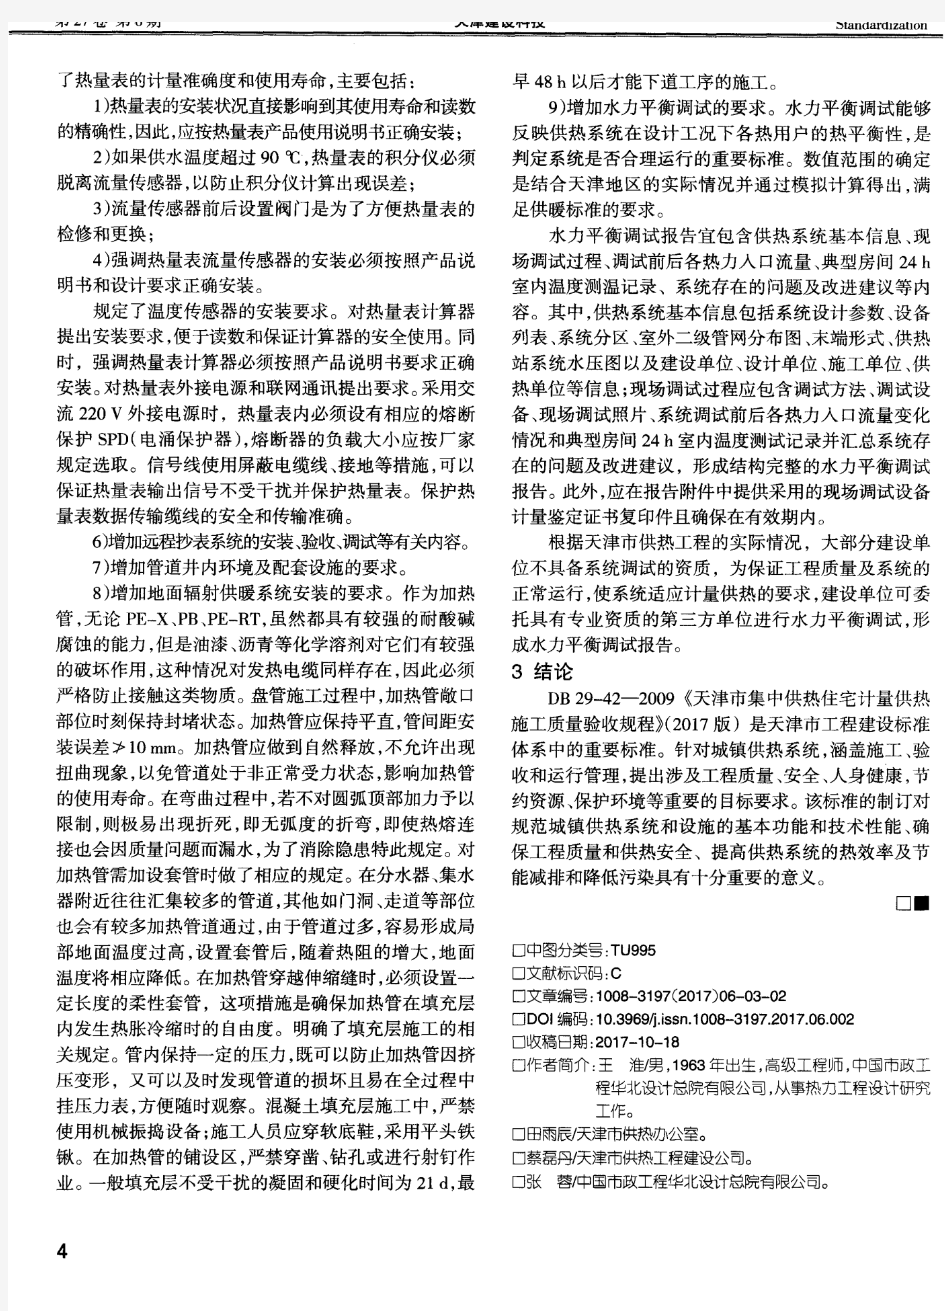 2017年版《天津市集中供热住宅计量供热施工质量验收规程》修订解读